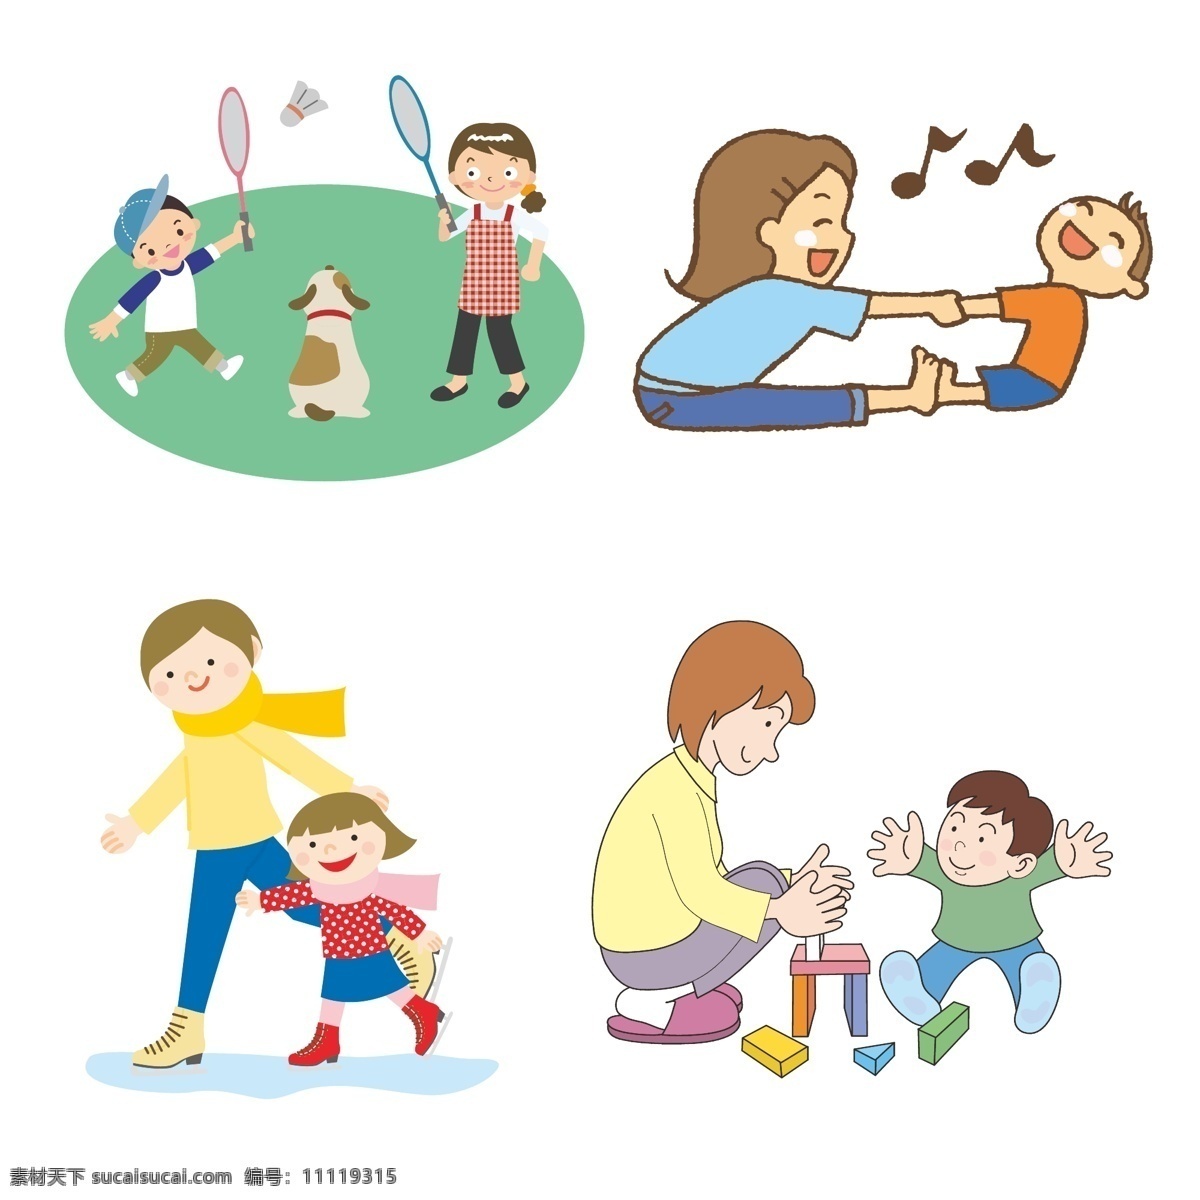 母亲 孩子 母亲与孩子 母子 儿子 女儿 母女 运动 羽毛球 拉伸 溜冰 玩积木 卡通 动漫卡通插图 动漫动画